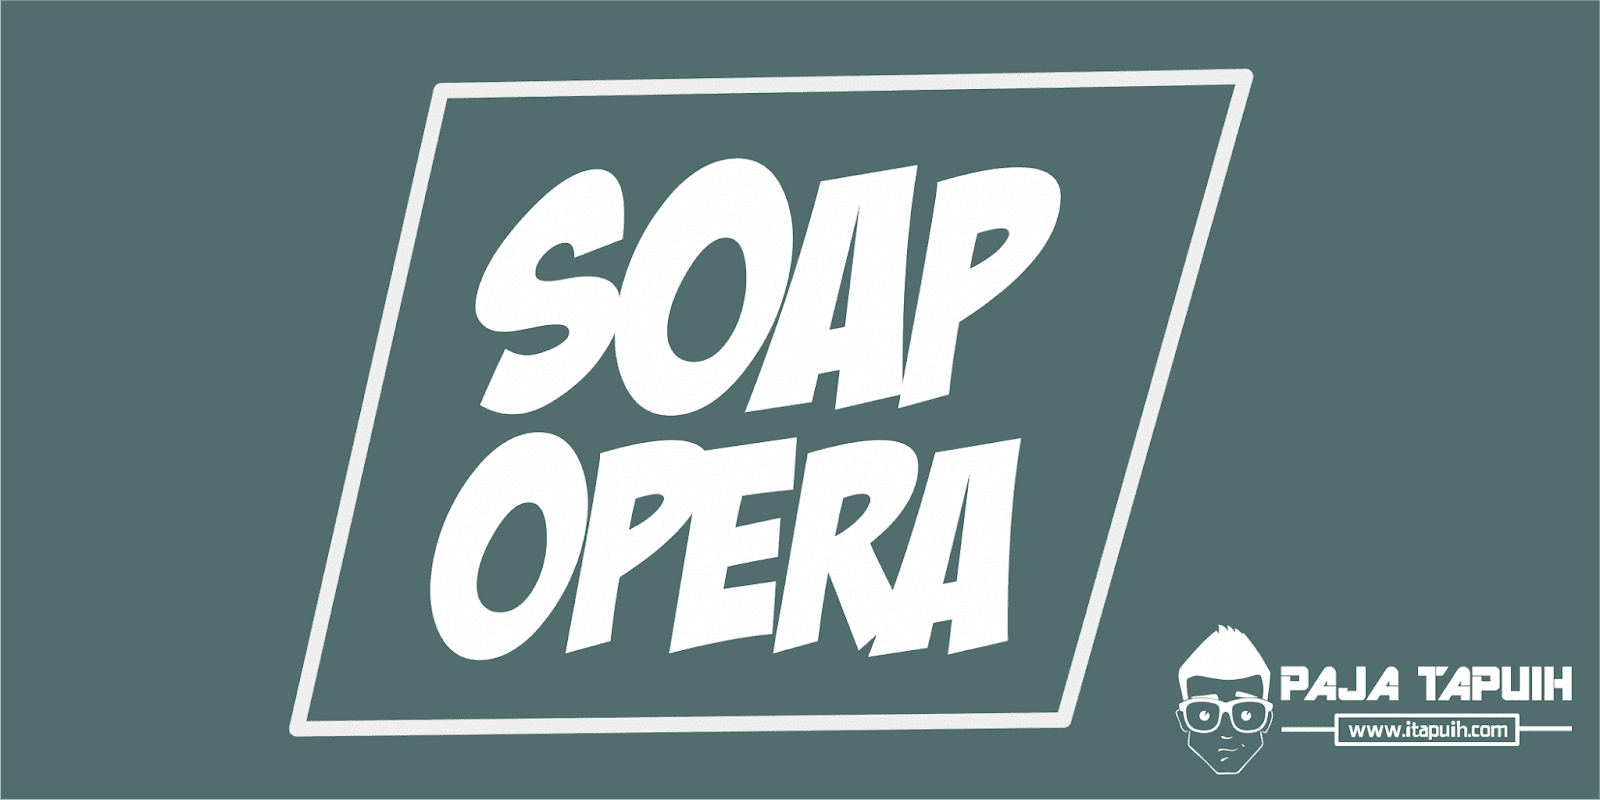 Apa Maksud Soap Opera